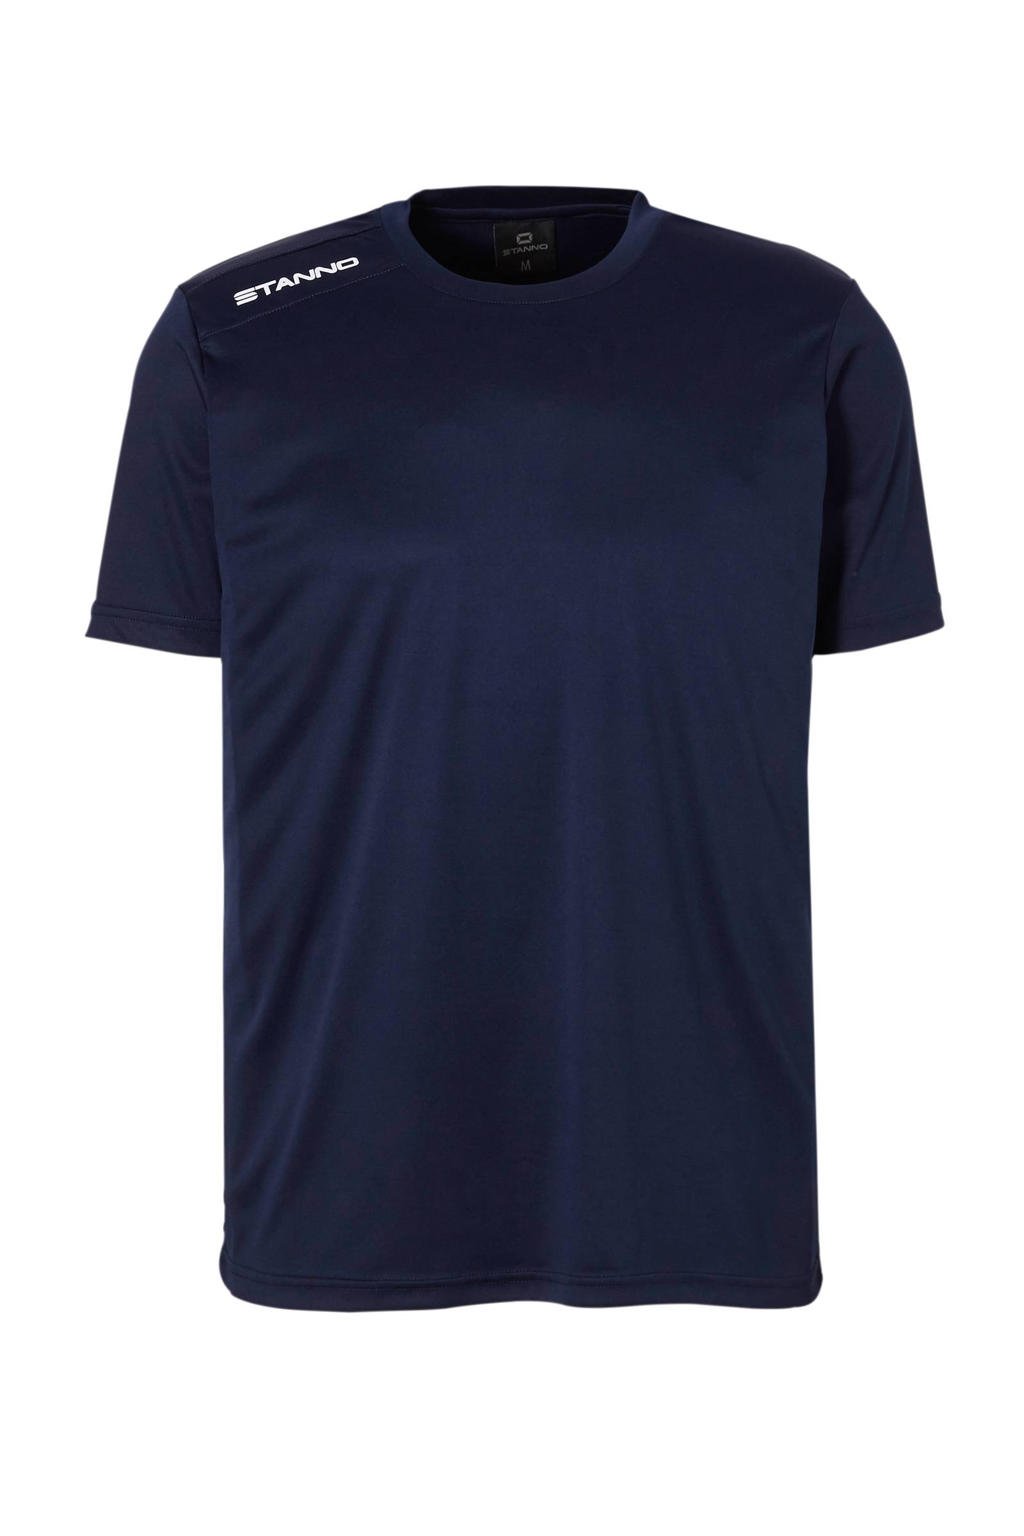 Donkerblauw en witte heren Stanno Senior sport T-shirt van polyester met korte mouwen en ronde hals